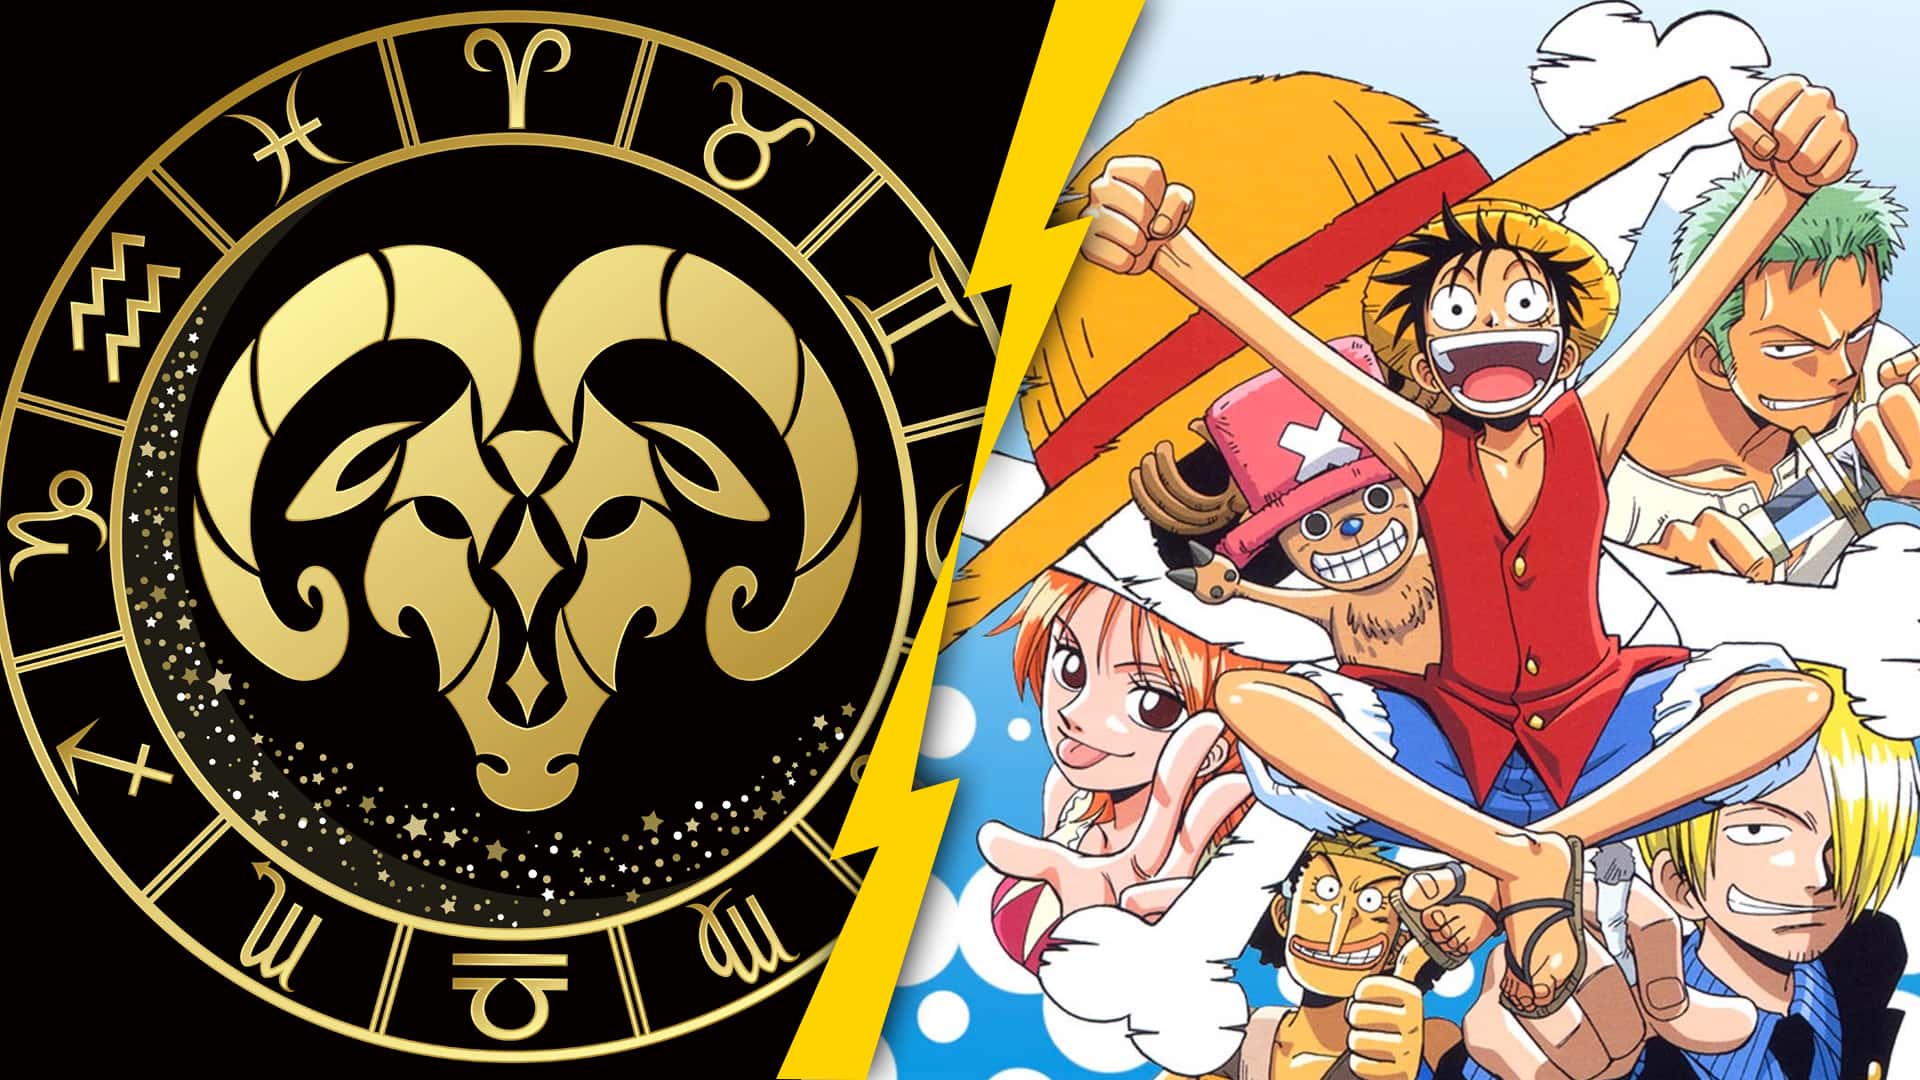 Quel Personnage De One Piece Je Suis Quel personnage de One Piece es-tu selon ton signe astrologique ? | OtakuFR